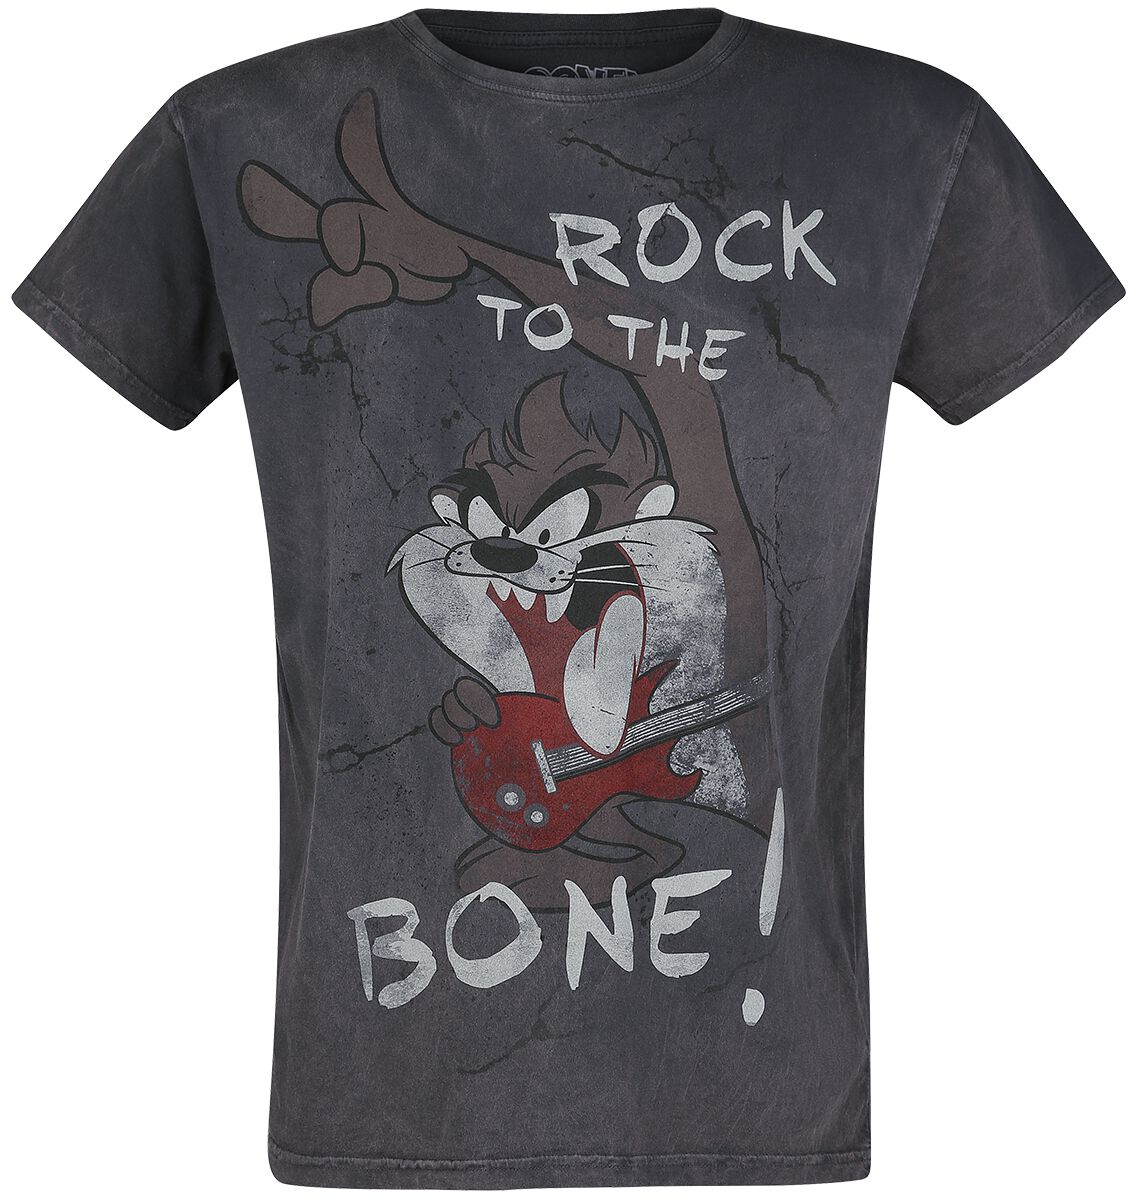 Looney Tunes T-Shirt - Tasmanian Devil - Rock To The Bone! - S bis 4XL - für Männer - Größe XL - grau  - EMP exklusives Merchandise!